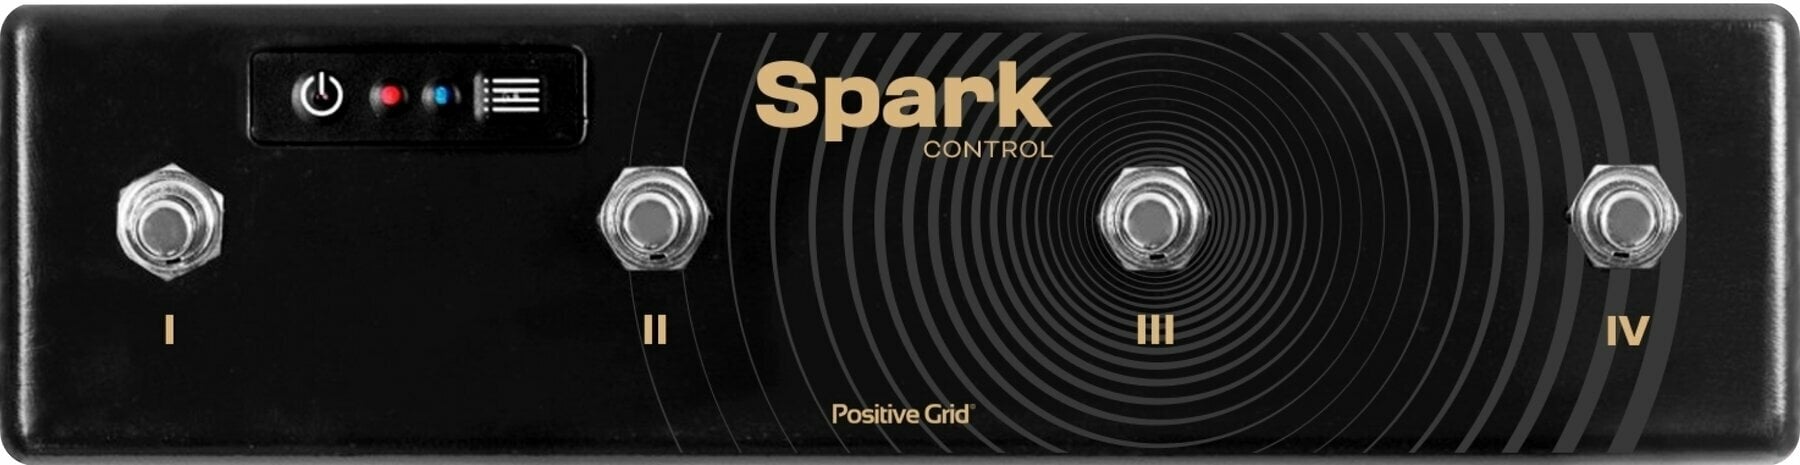 Voetschakelaar Positive Grid Spark Control Voetschakelaar